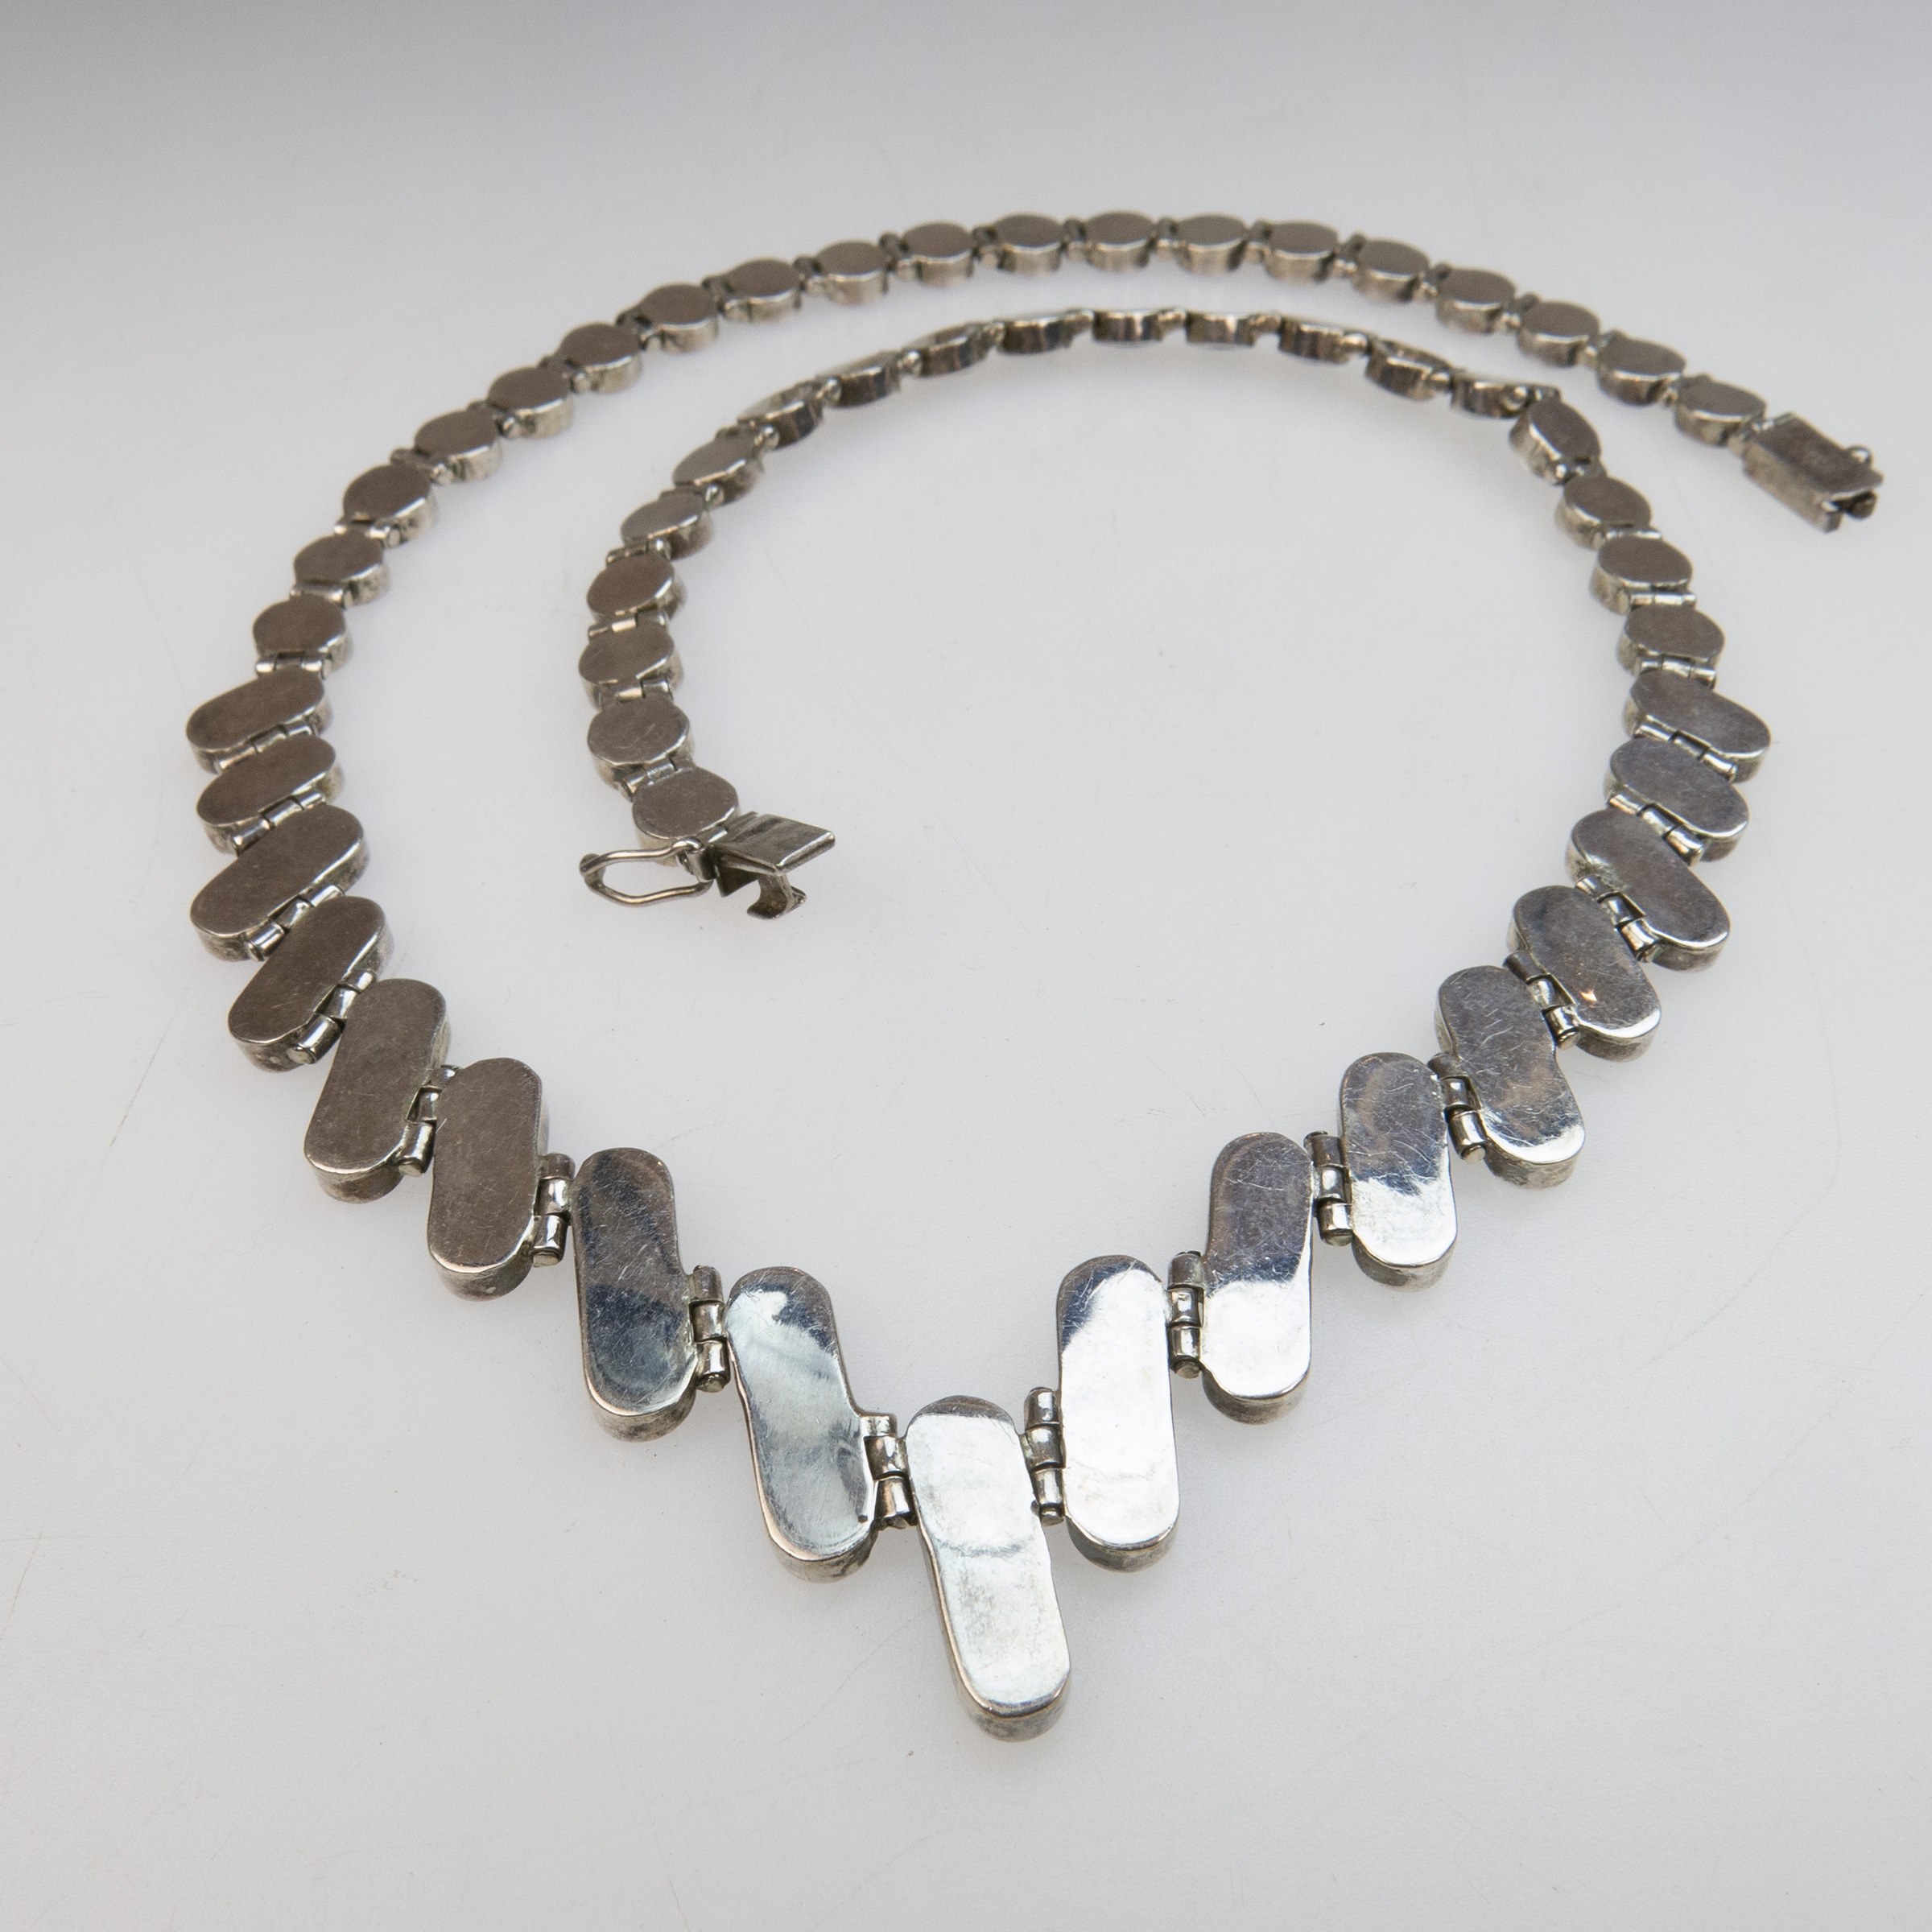 950 Grade Silver Necklace